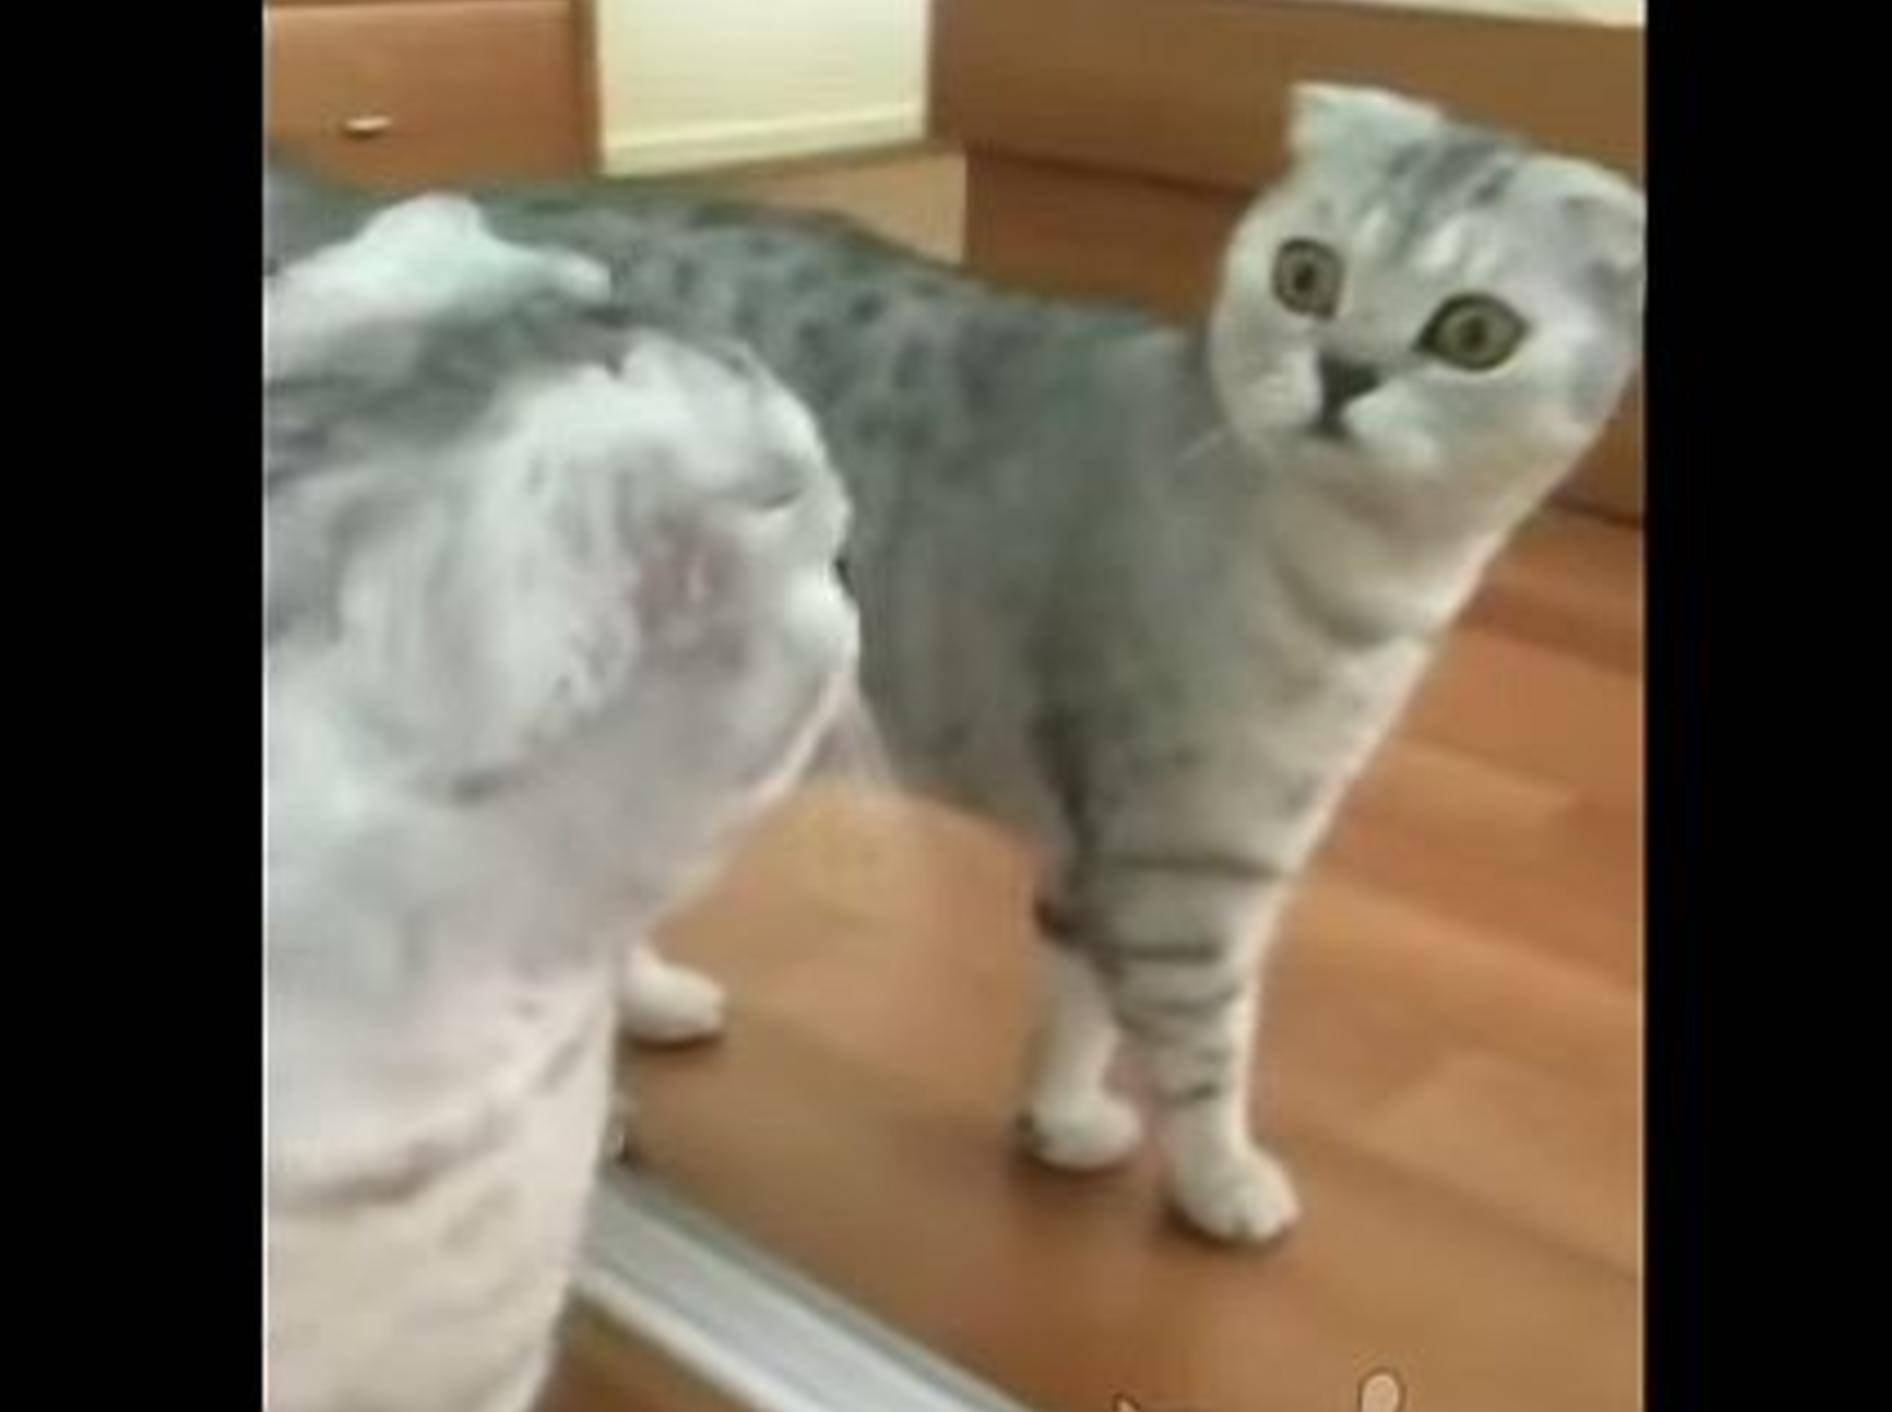 Katze vor dem Spiegel: "Das bin ja ich!" – Bild: Youtube / ignoramusky